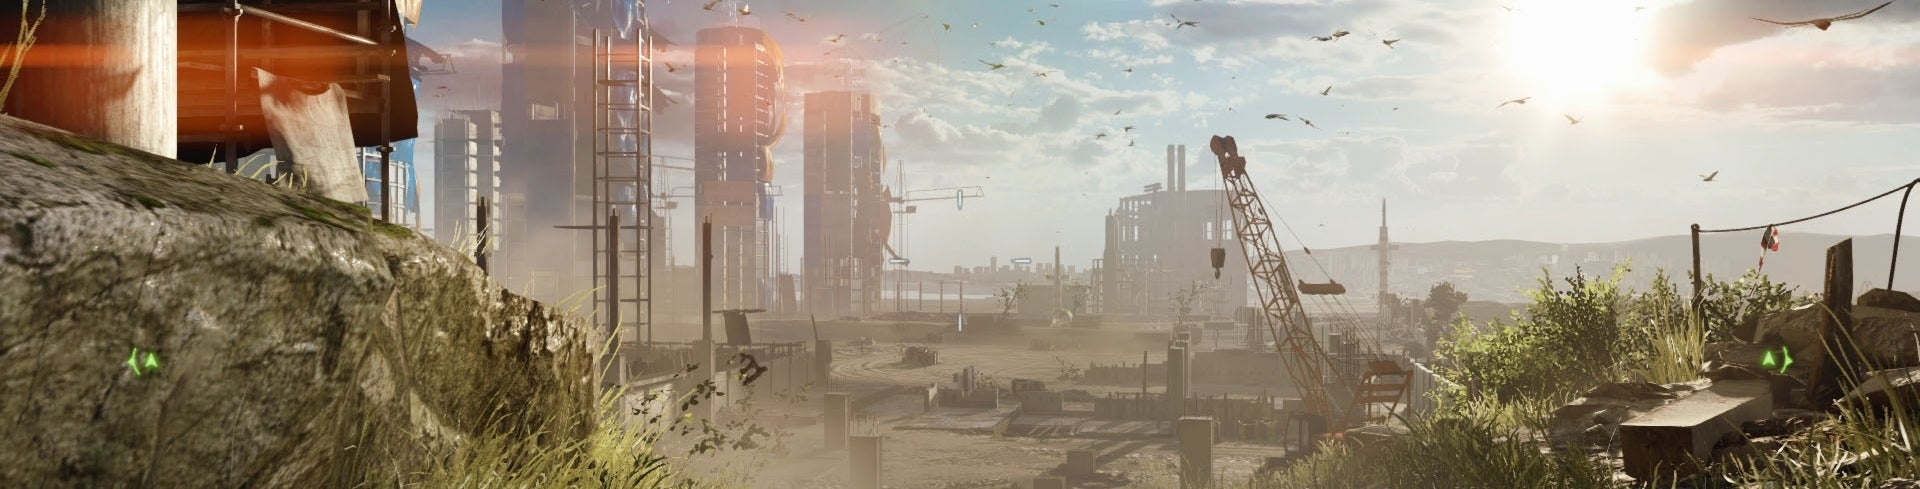 Obrazki dla Digital Foundry kontra Battlefield 4 na konsolach nowej generacji i PC